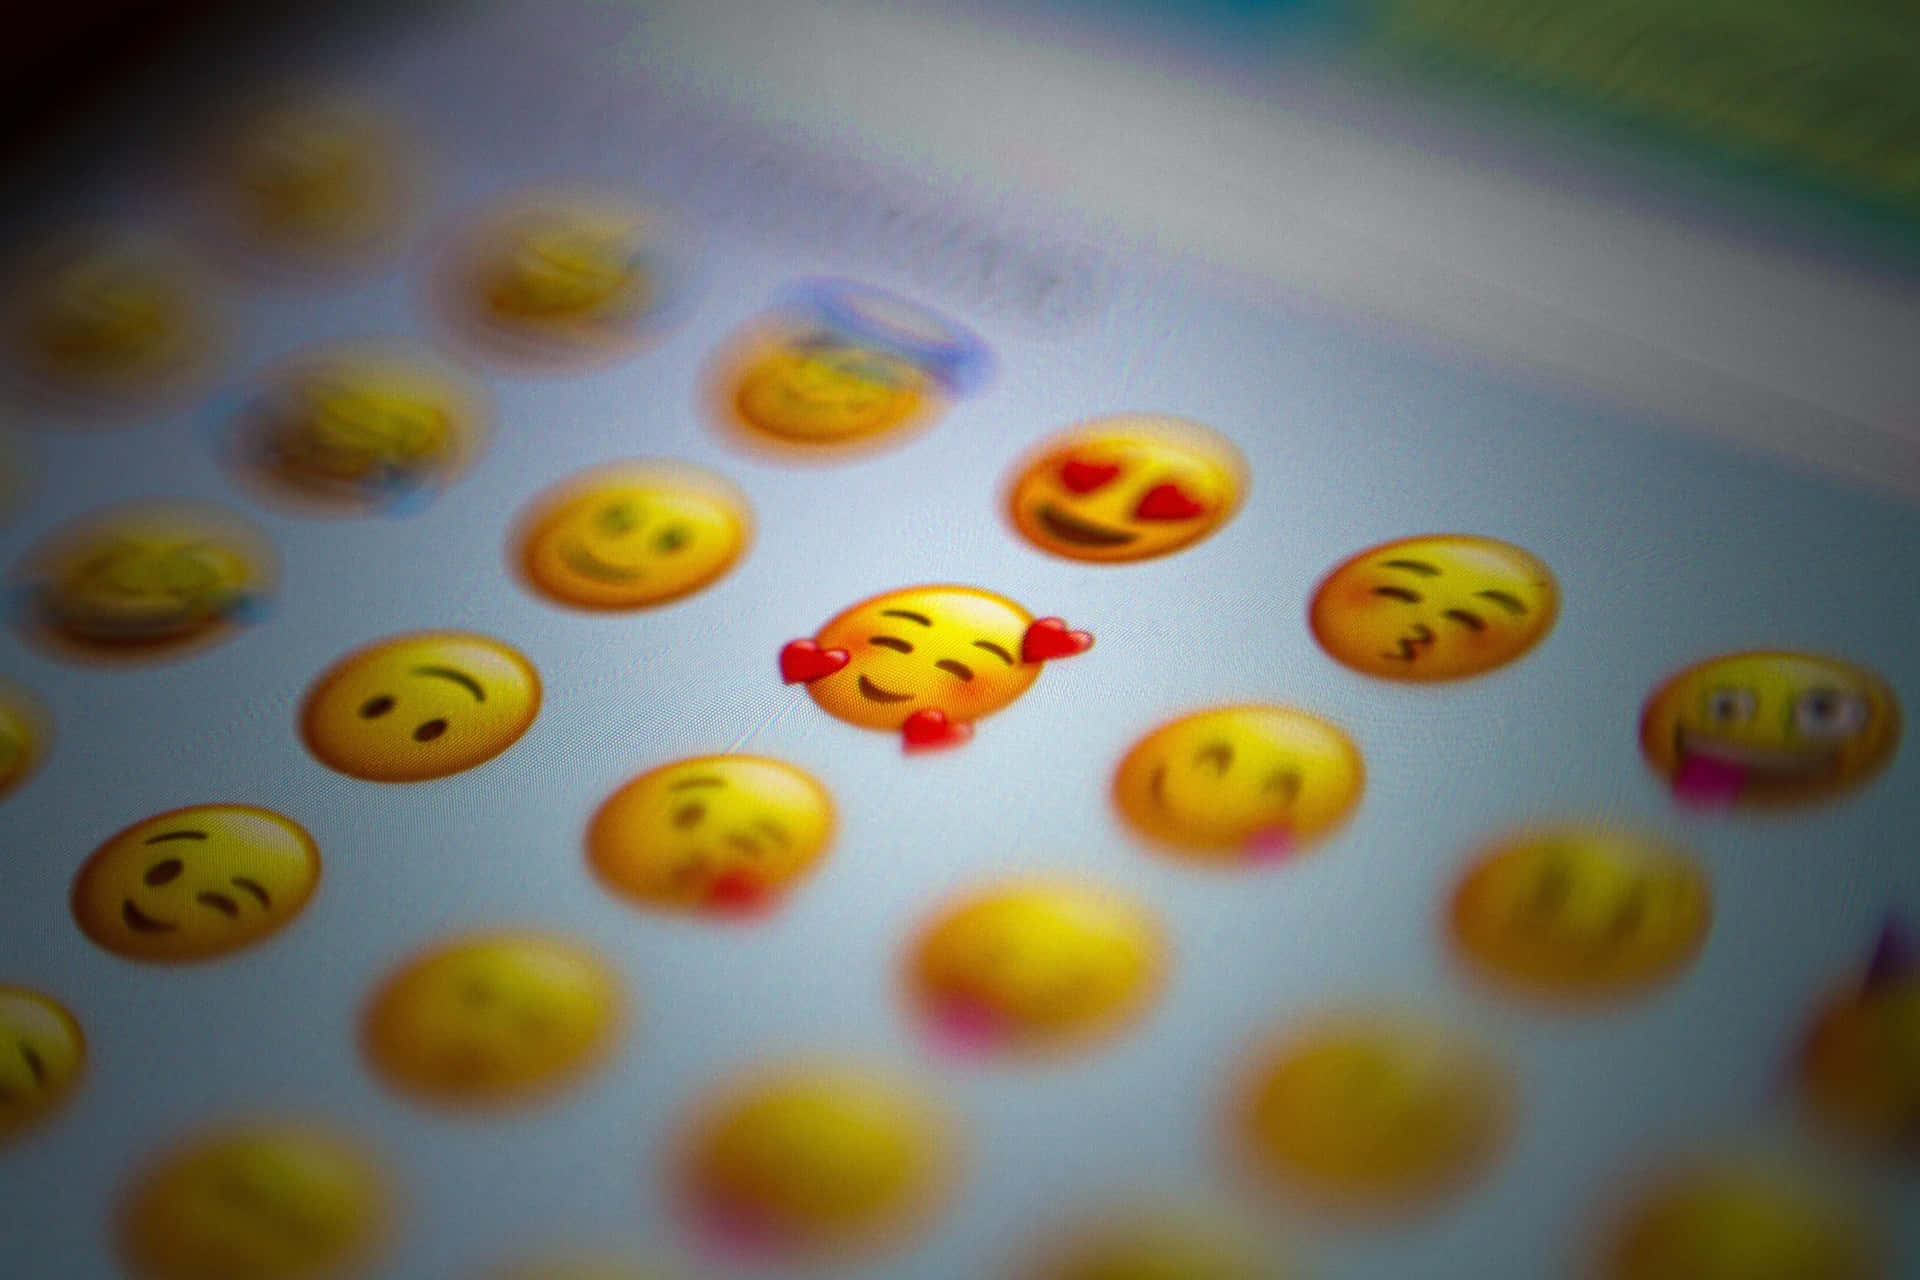 Enmängd Roliga Emoji-symboler